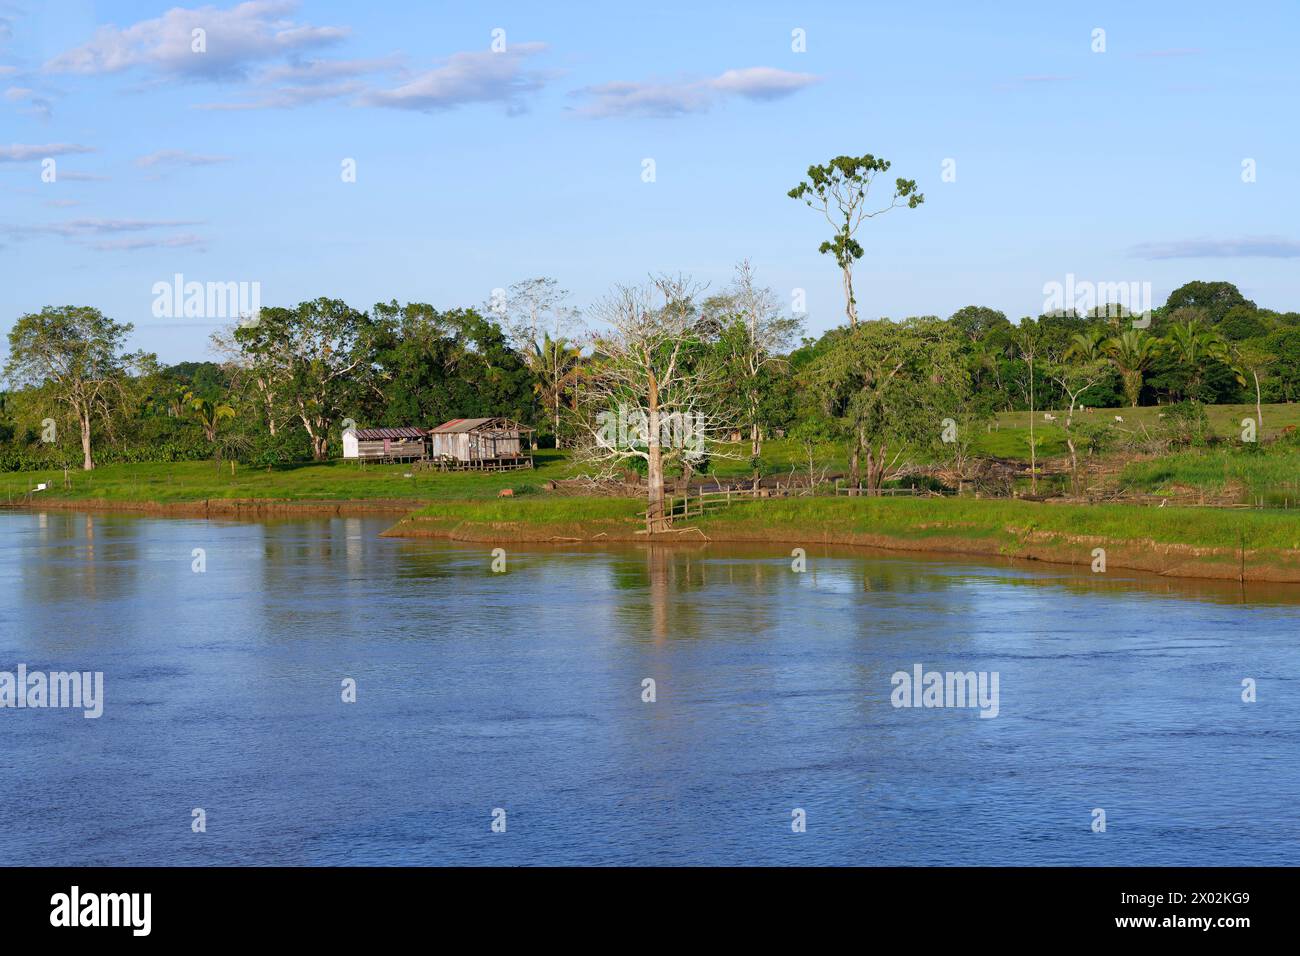 Maisons en bois sur pilotis dans la forêt inondée le long de la rivière Madère, état d'Amazonas, Brésil, Amérique du Sud Banque D'Images